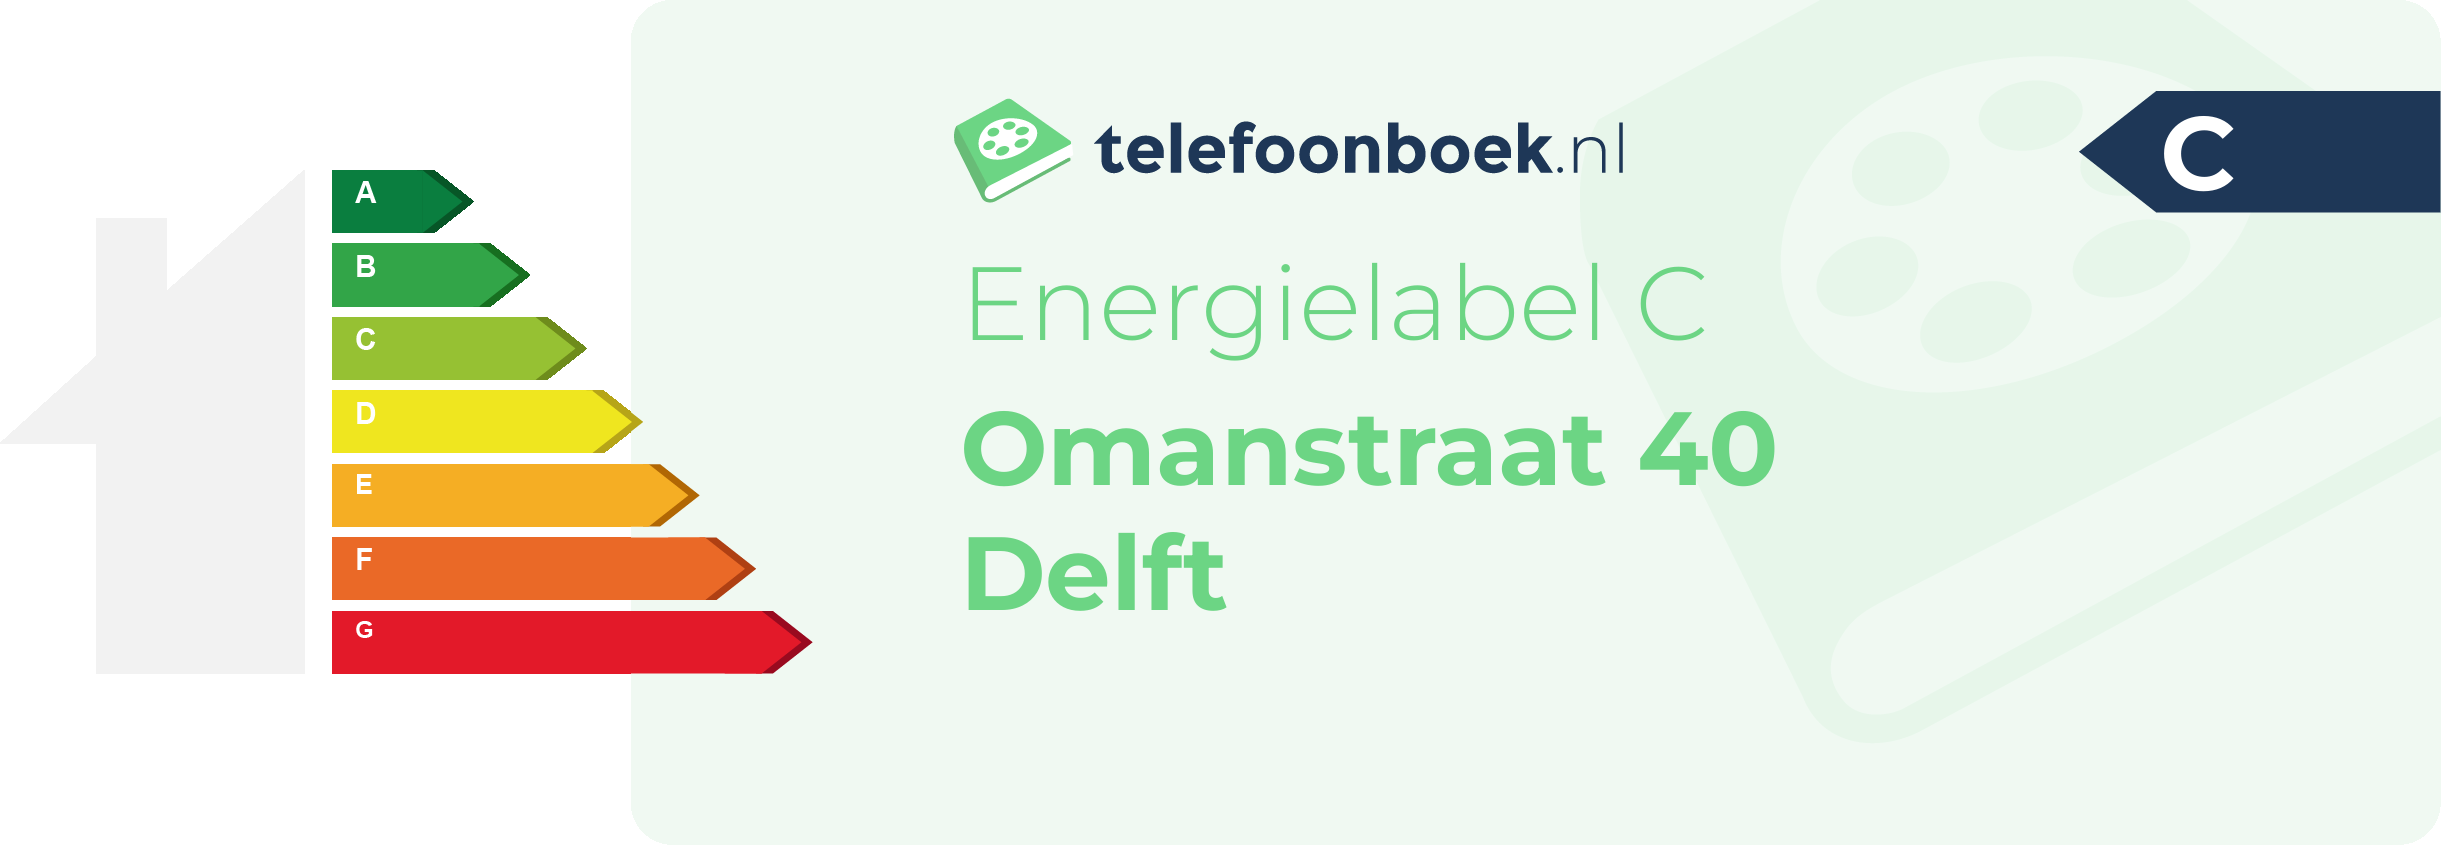 Energielabel Omanstraat 40 Delft